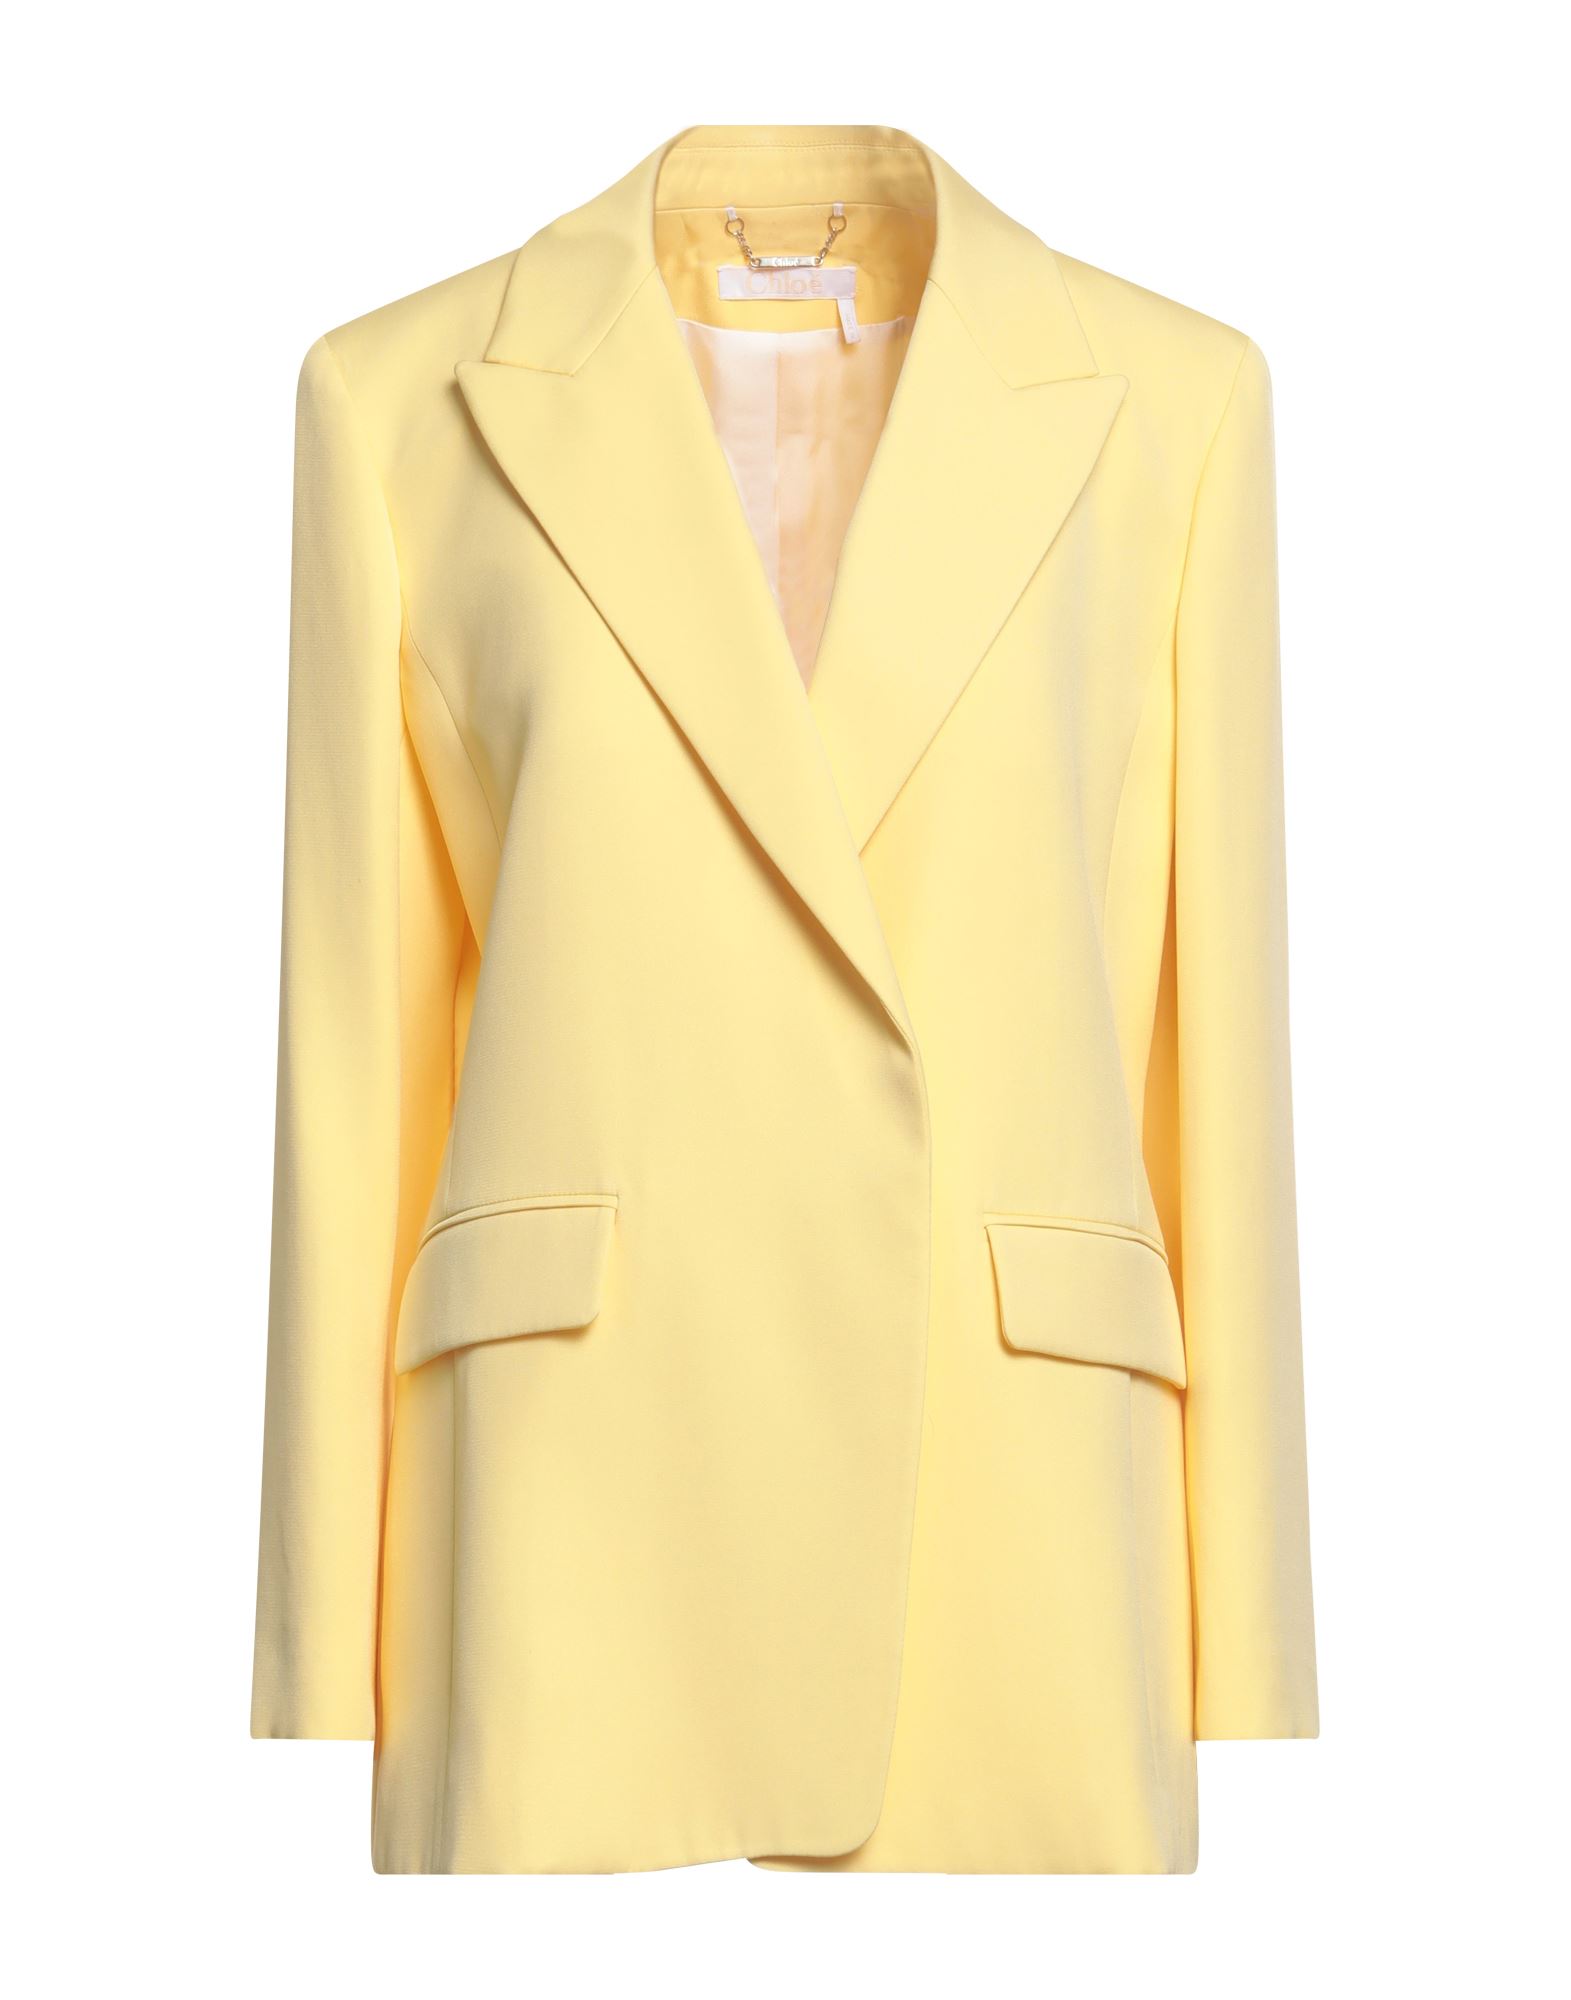 Chloé Woman Blazer Yellow Size 6 Silk